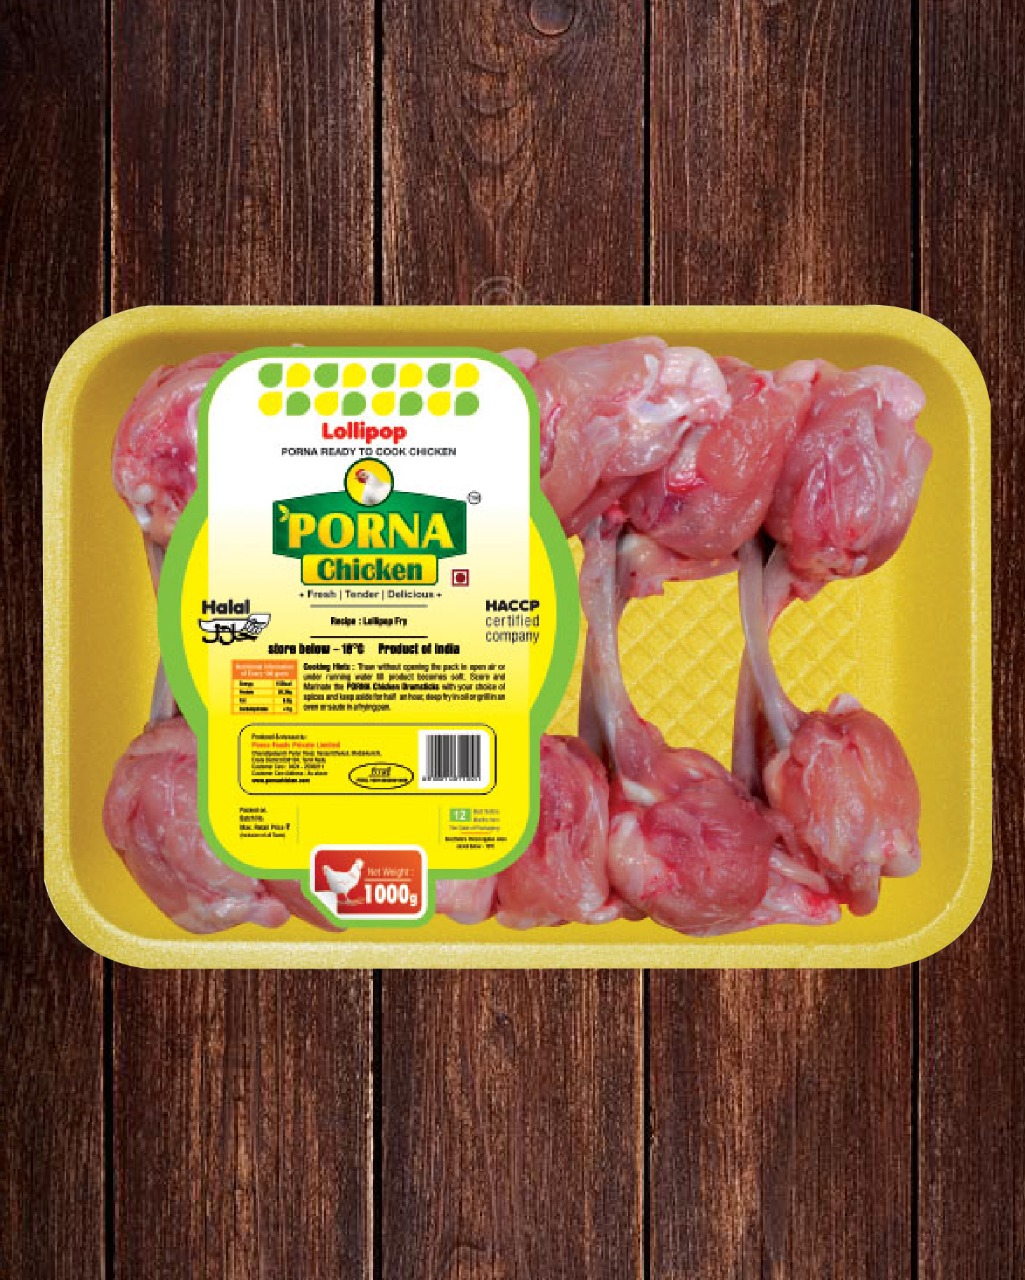 1025px x 1280px - SKM Porna Chicken | Best Quality Chicken in India